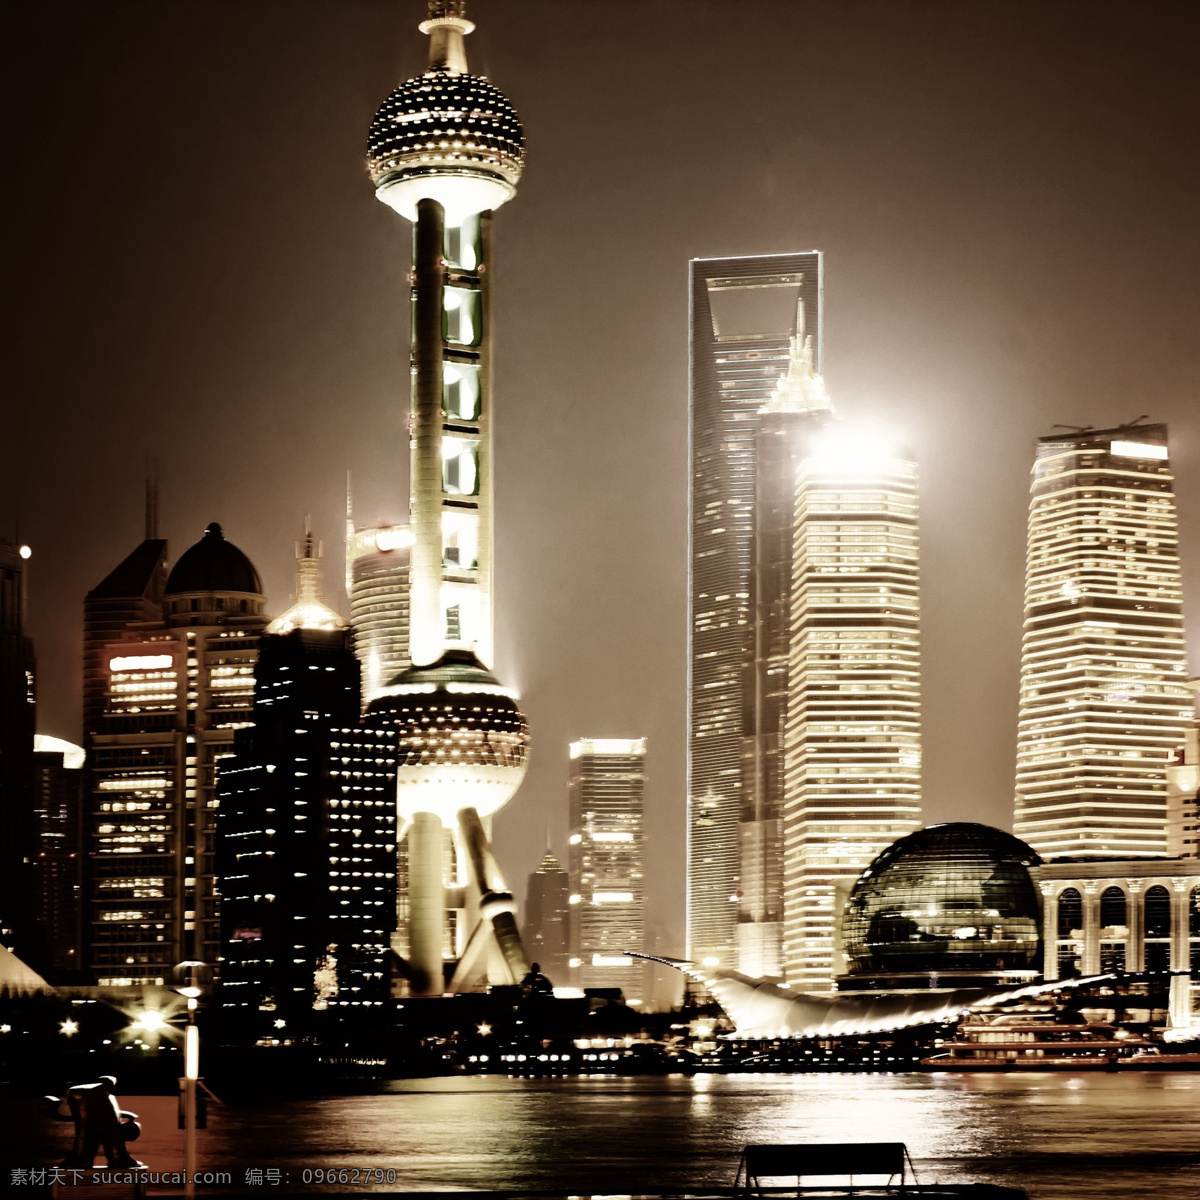 上海夜景 中国 上海 夜景 风景 黑色